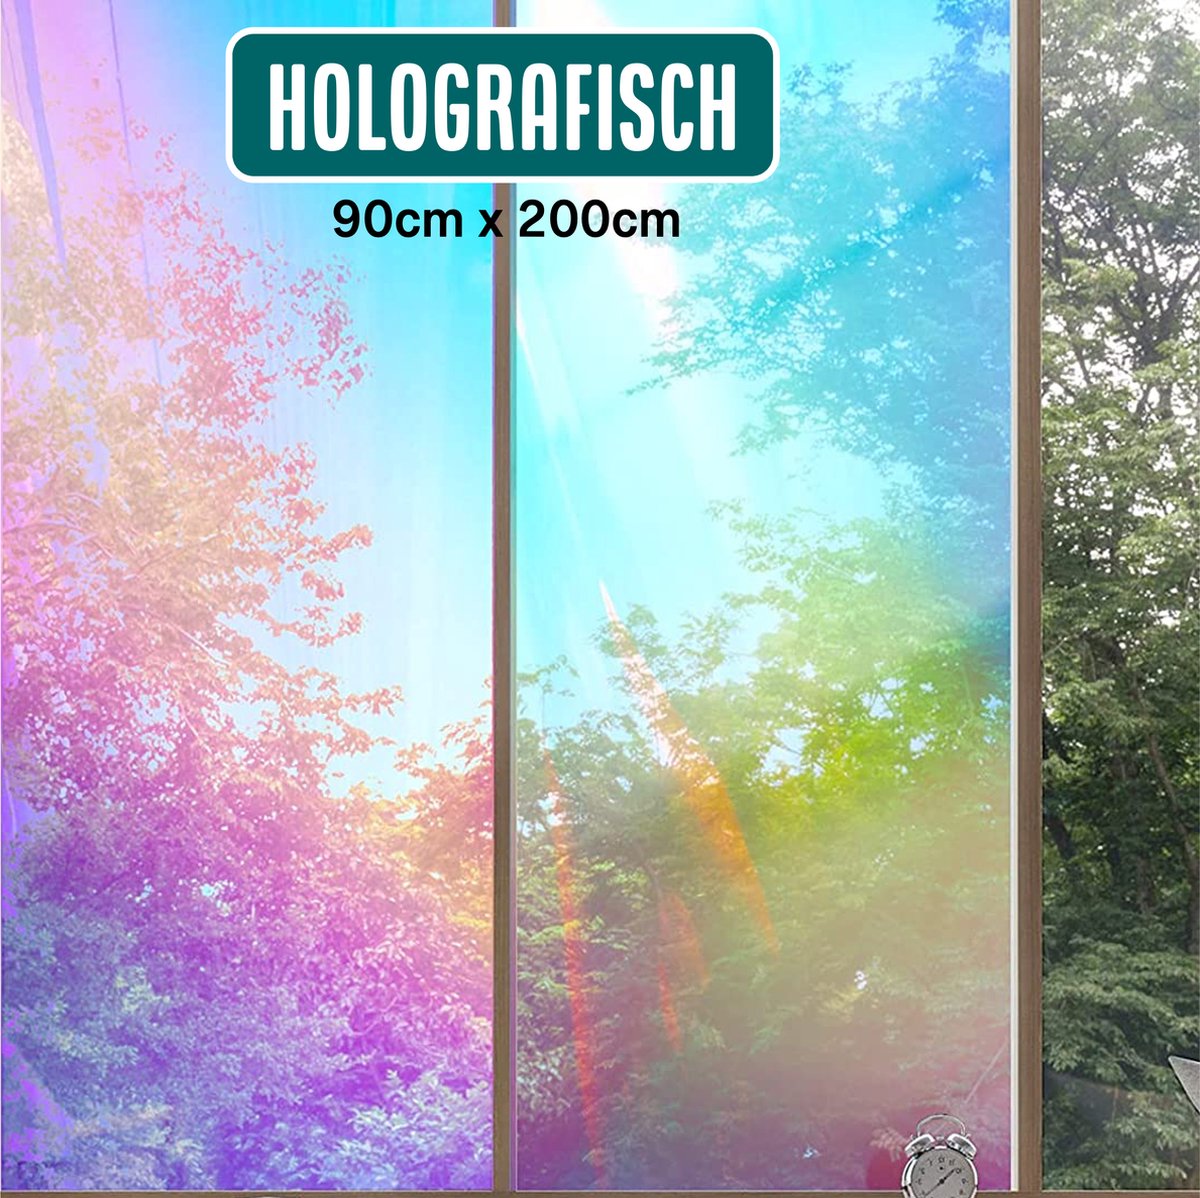 Homewell - Holografische raamfolie HR++ 90x200cm - Zonwerend & Isolerend - Statisch Zelfklevend - Zeepbel-effect - Homewell